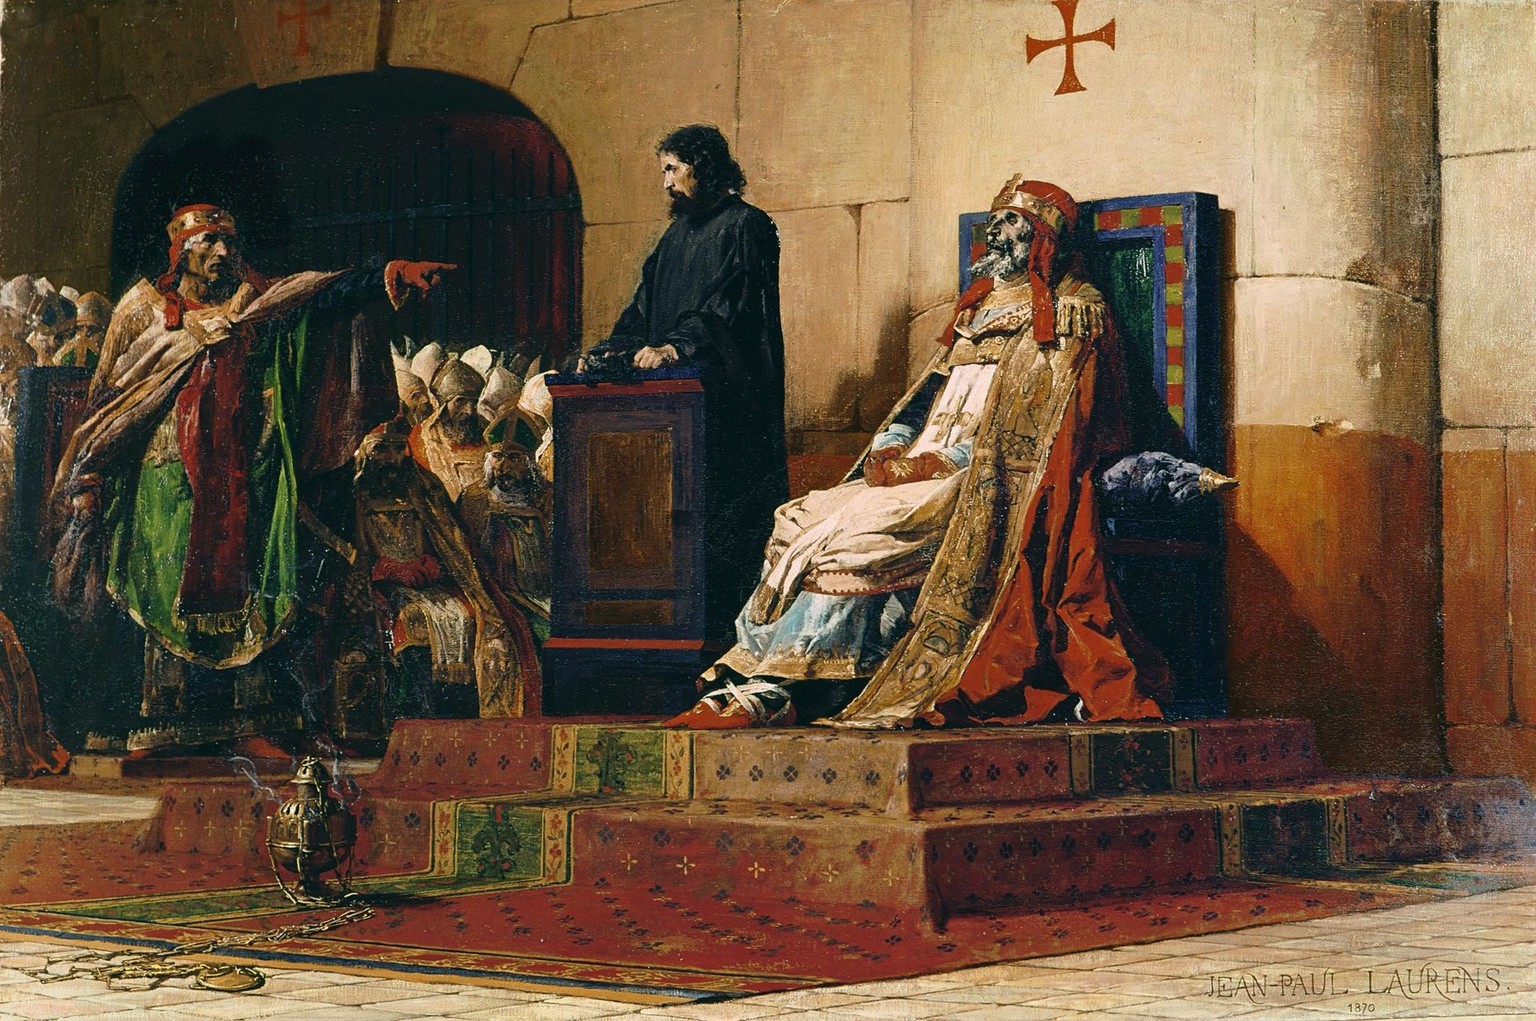 Der seit neun Monaten tote Papst Formosus und sein Kläger Stephan VI. Historisierende Phantasiedarstellung der Leichensynode in einem Gemälde von Jean-Paul Laurens, 1870.